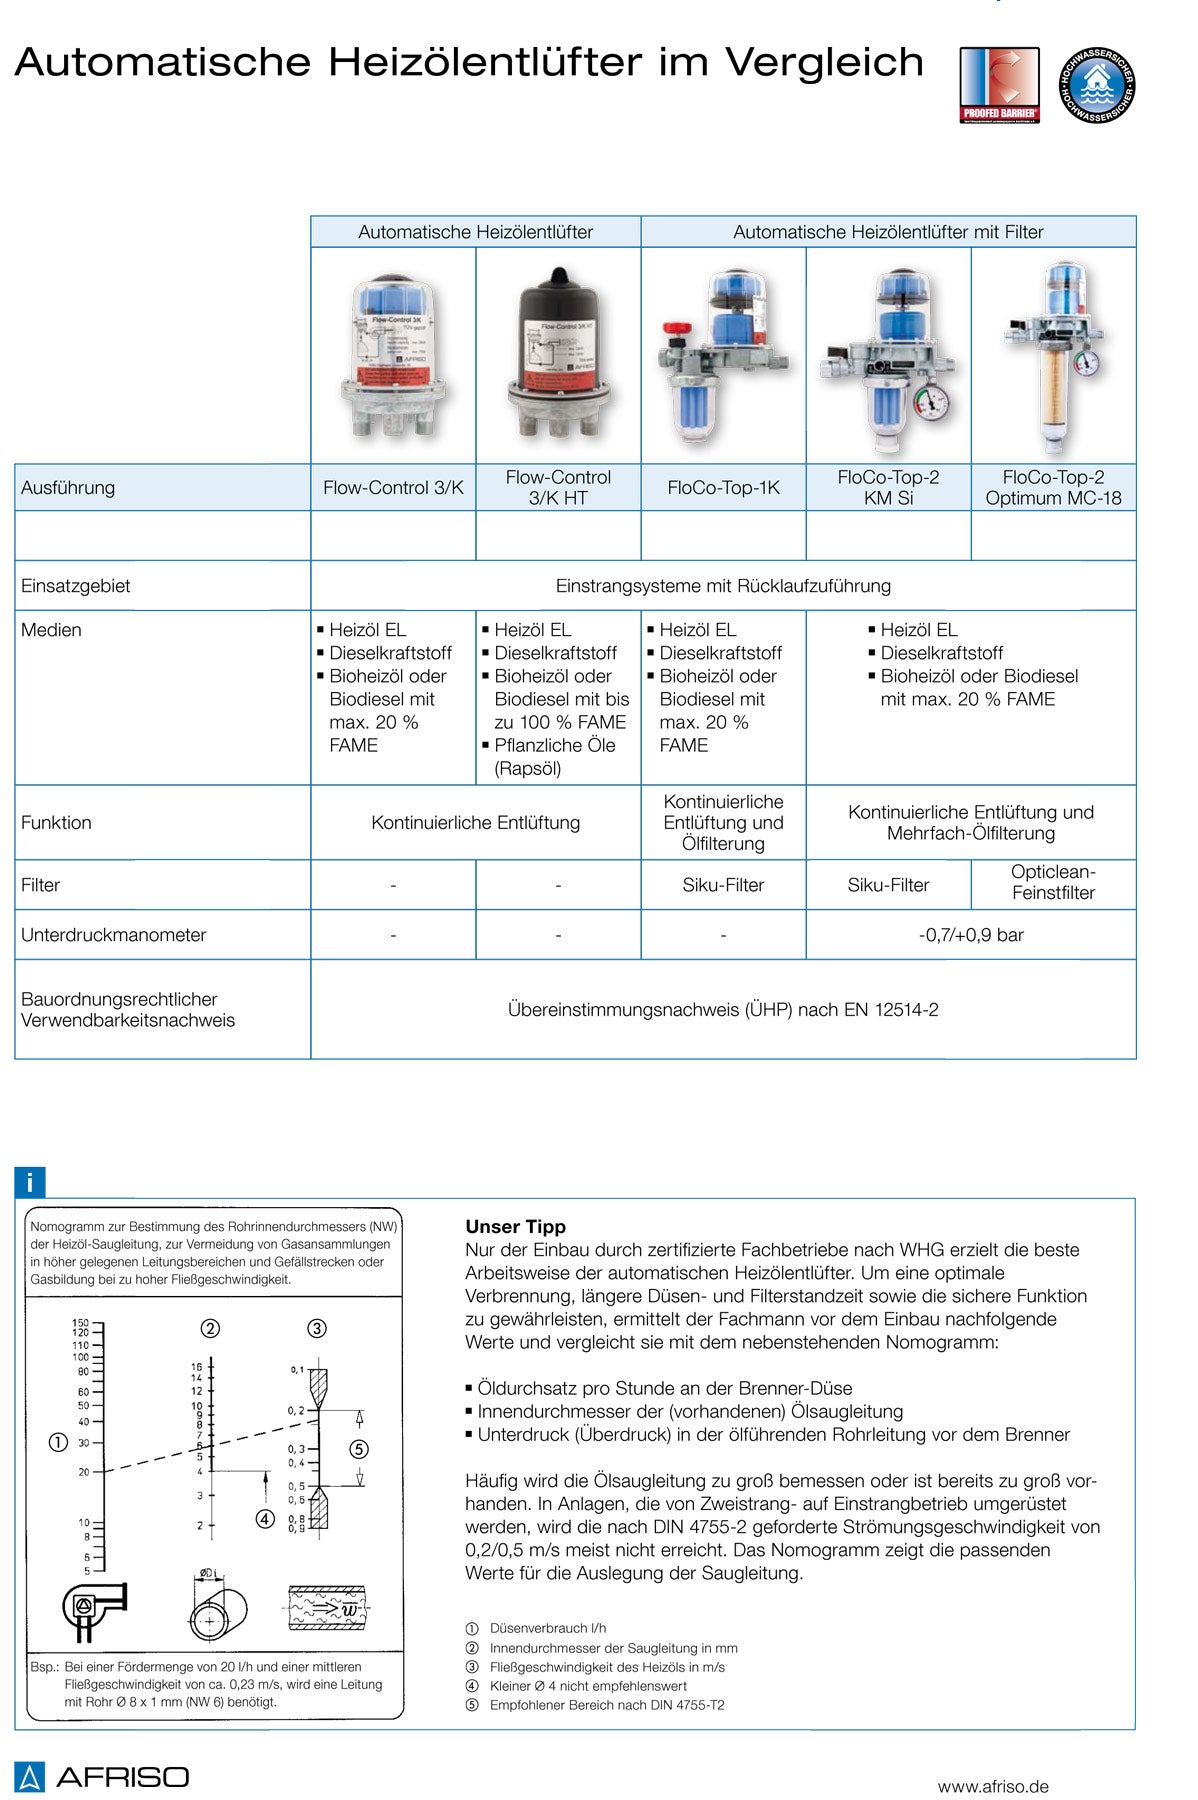 Zweistrang- und Einstrang-Heizölfilter mit automatischer Entlüftung von AFR